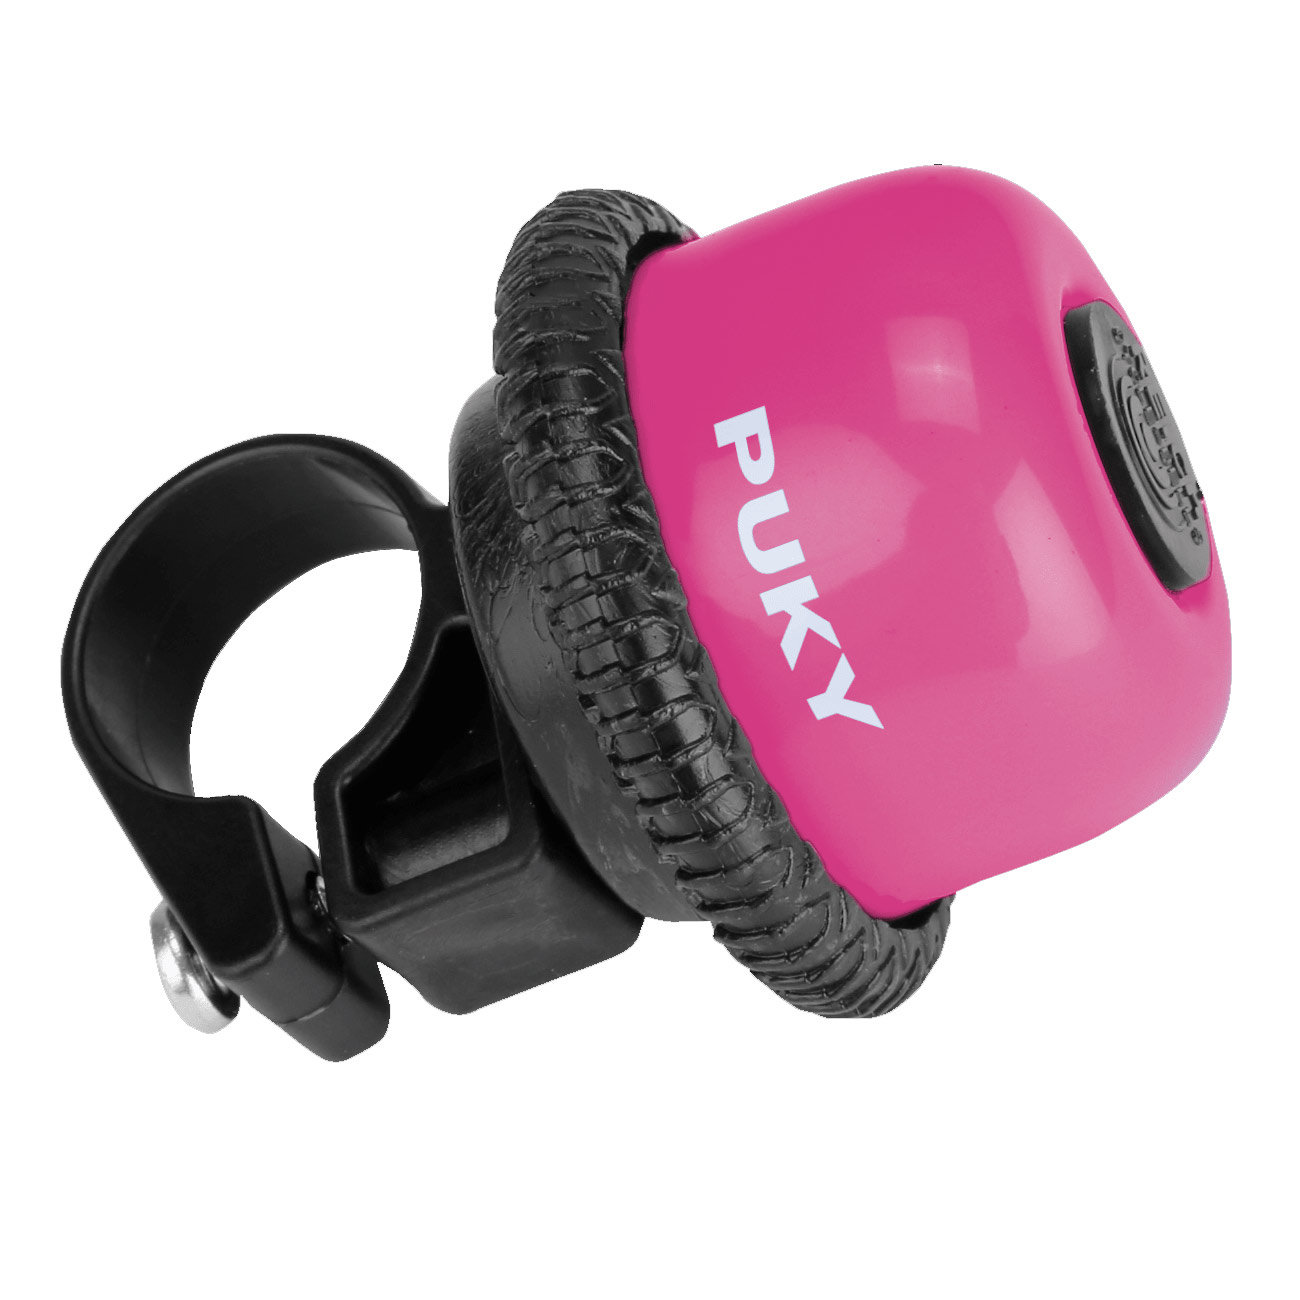 Produktbild von Puky G 20 Drehring-Spielglocke - Klingel - pink